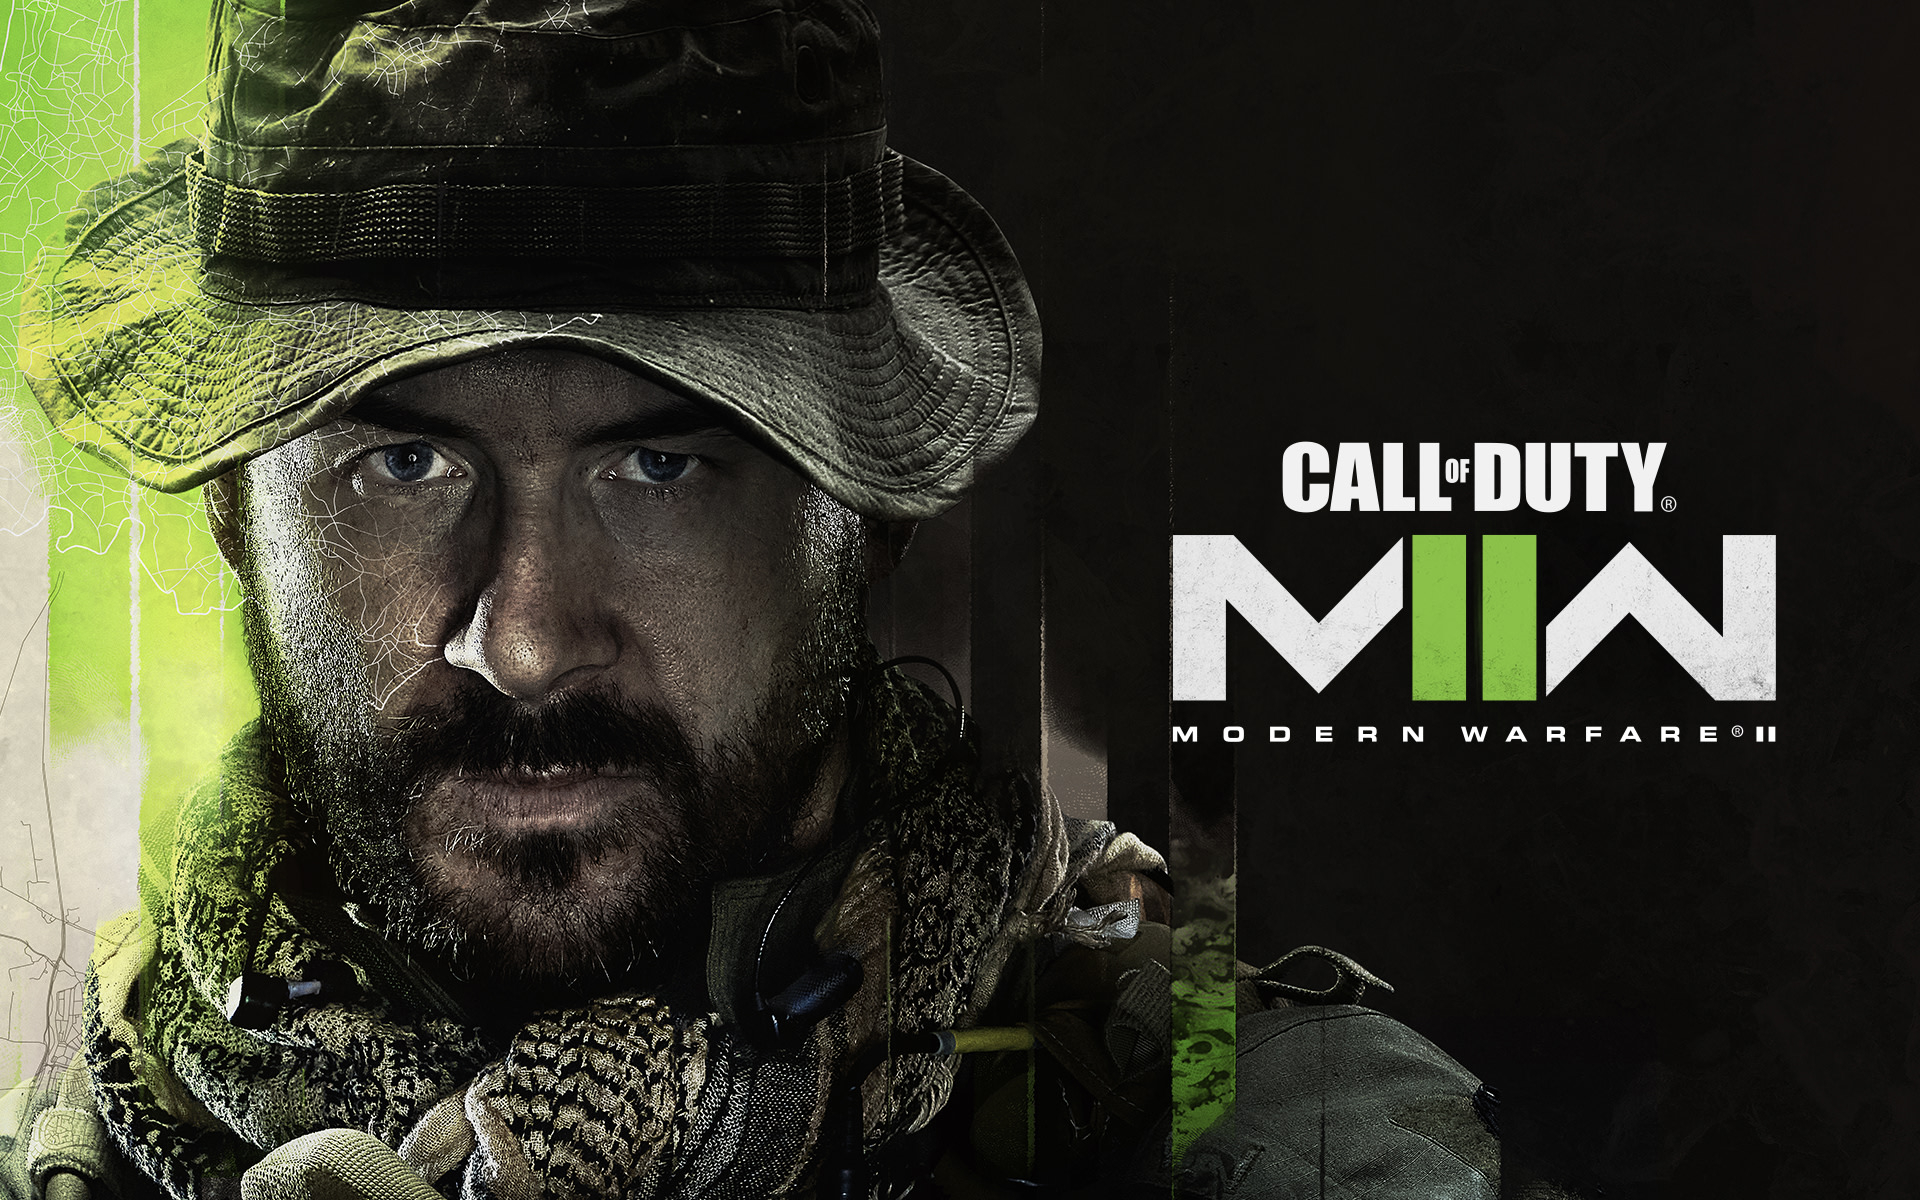 1359x1050 Resolution Call Of Duty Modern Warfare 2 HD Gaming 1359x1050 ...